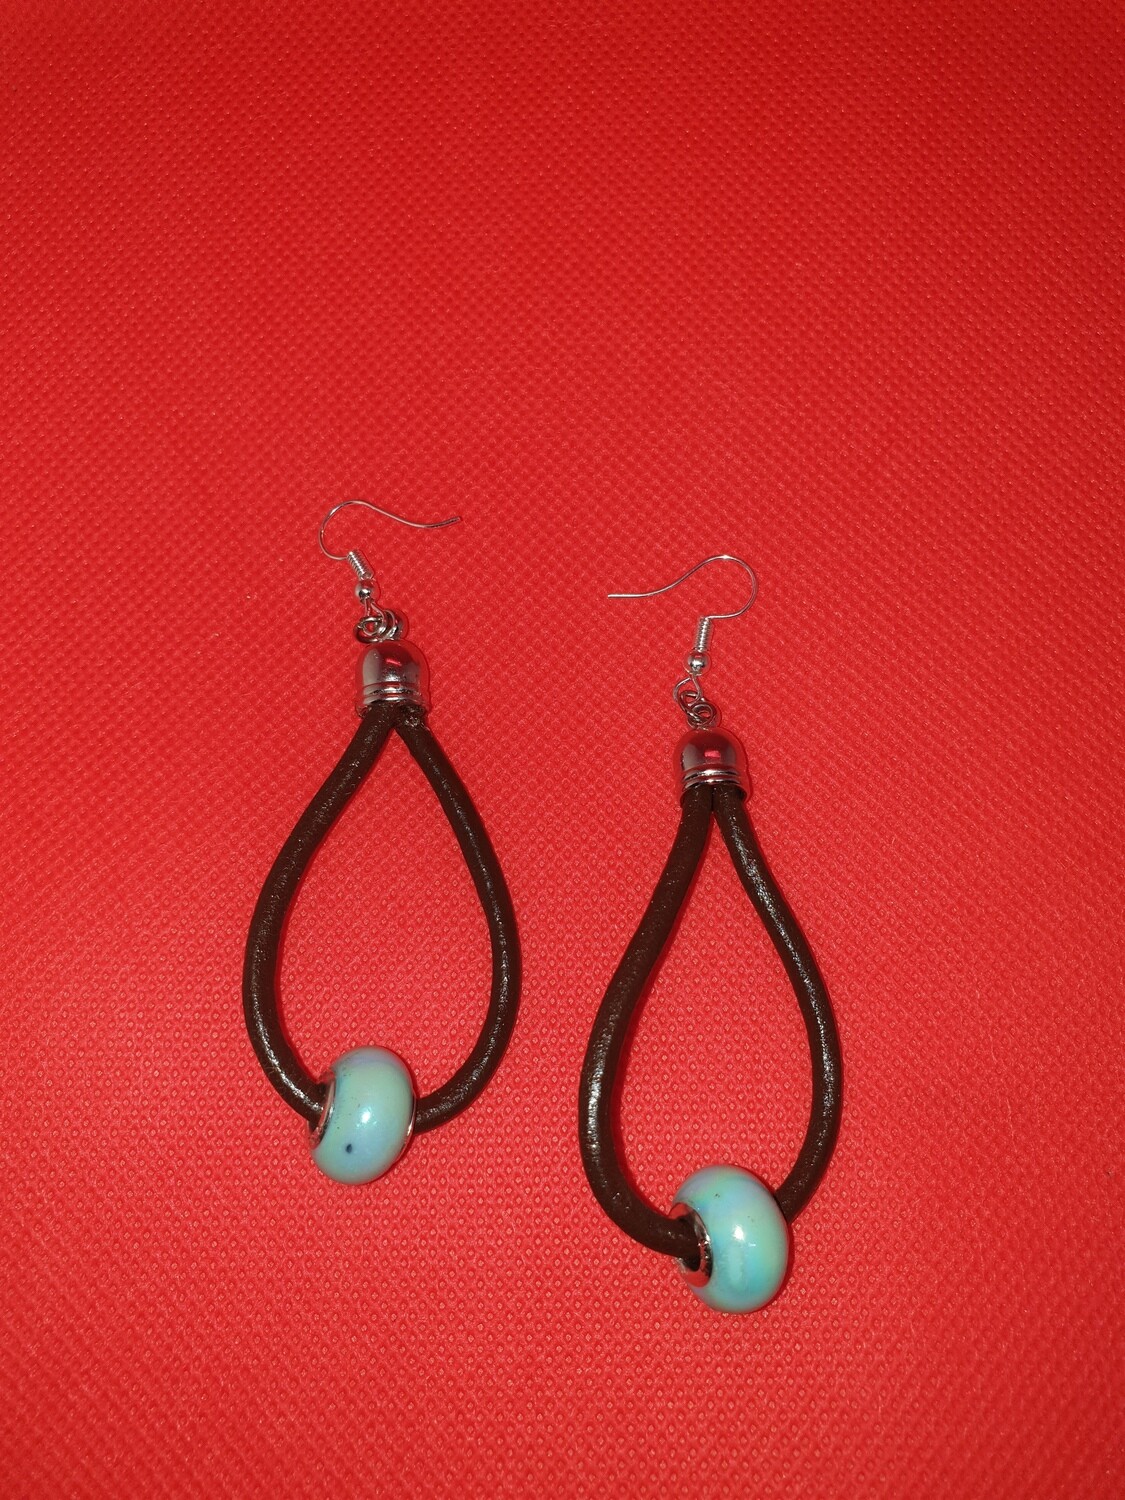 Leather earrings blue hoop